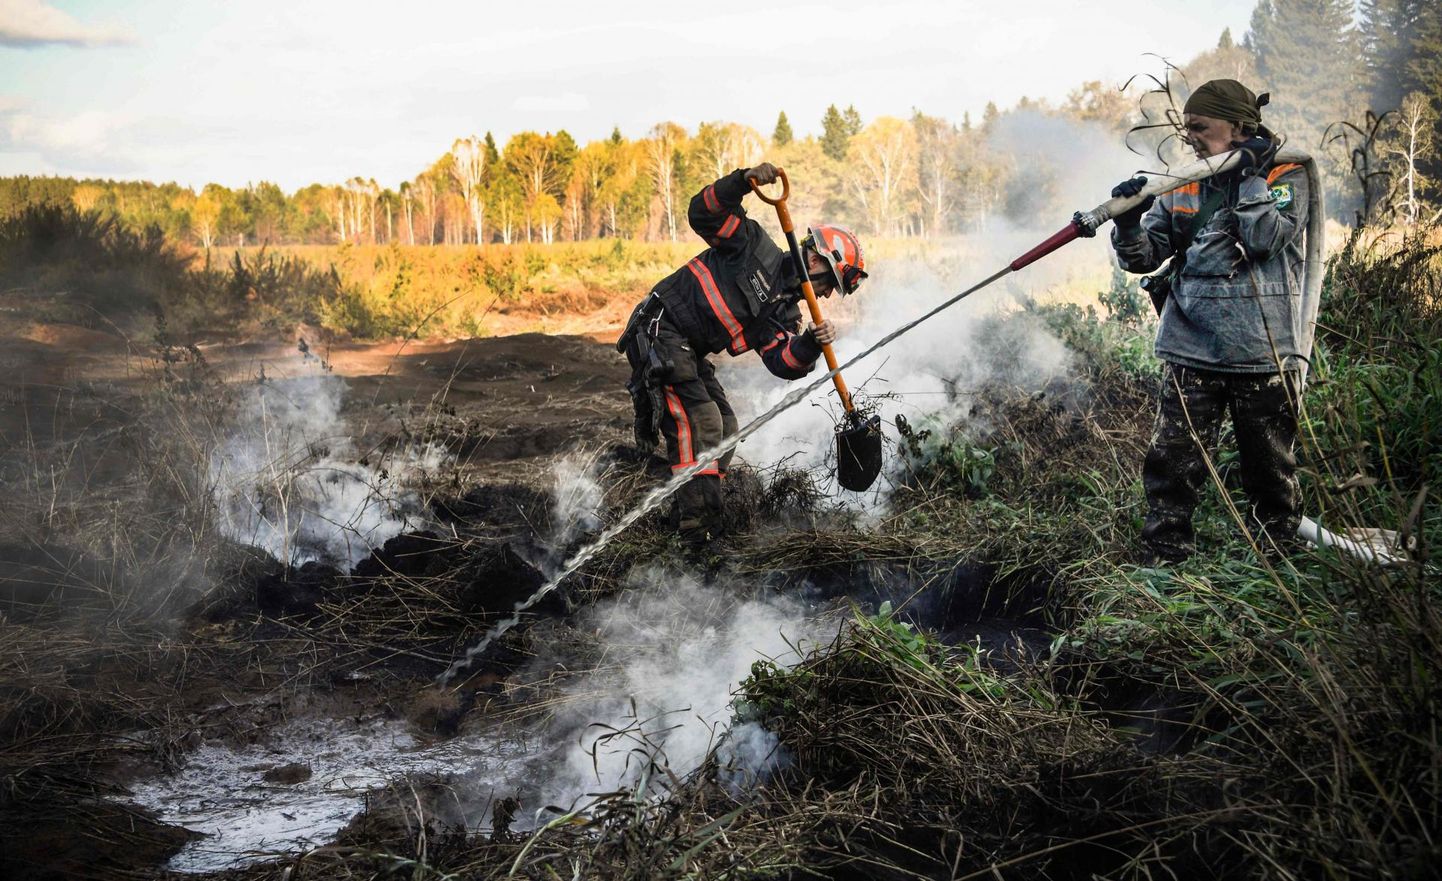 Greenpeace’i aktivistid kustutavad koos kohalike elanikega turbapõlengut Suzunski metsas Šipunovo küla lähistel. Pinna all on seal tuli hõõgunud juba mitu aastat. 